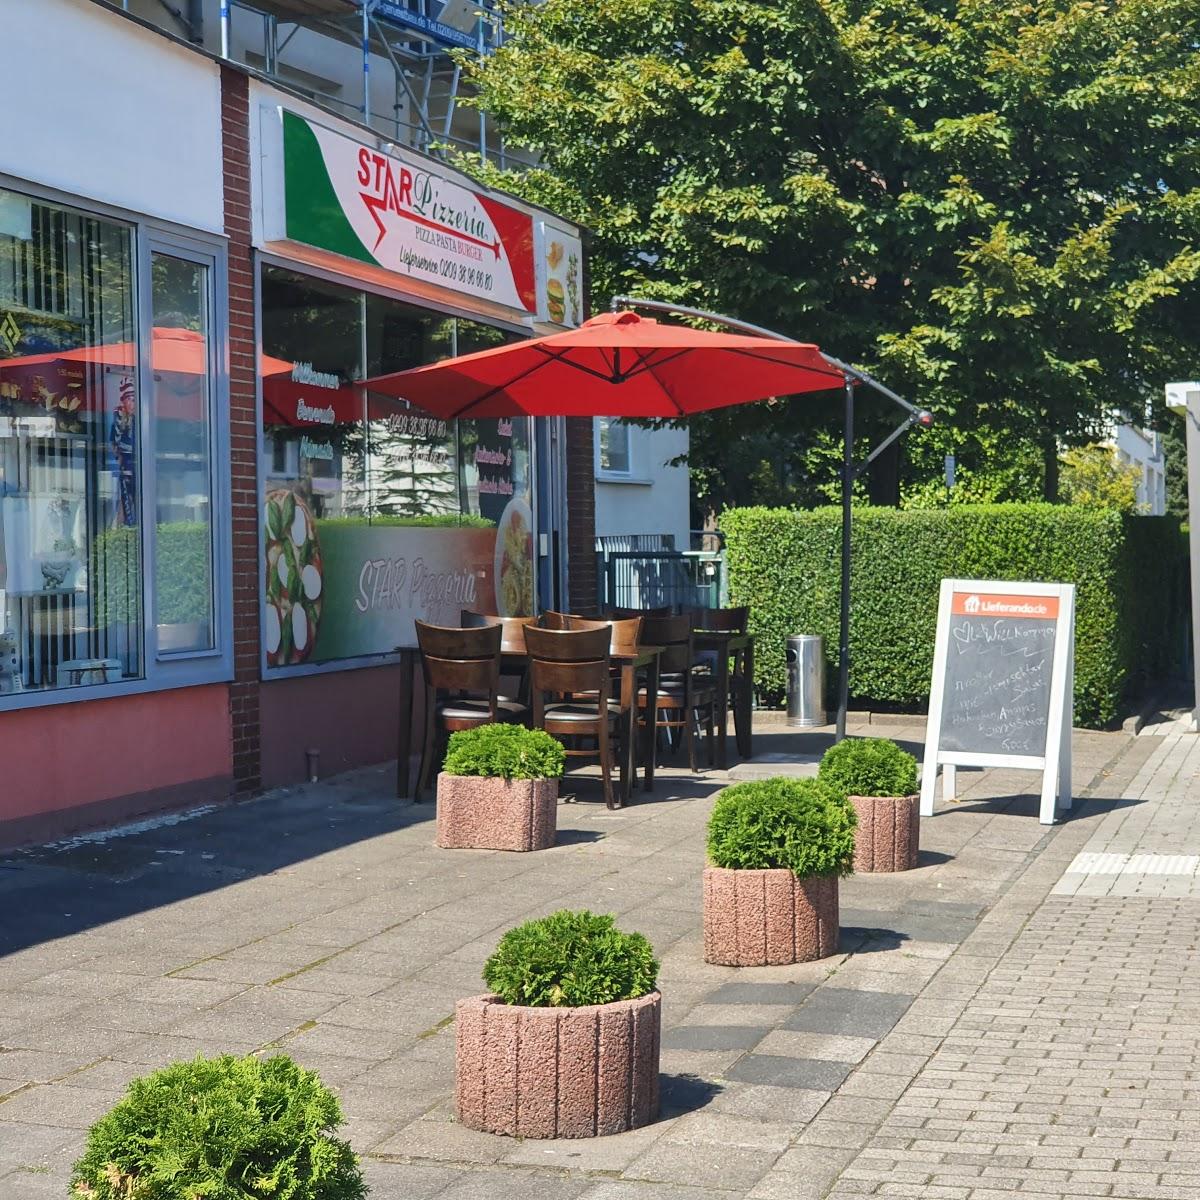 Restaurant "Star Pizzeria" in Gelsenkirchen